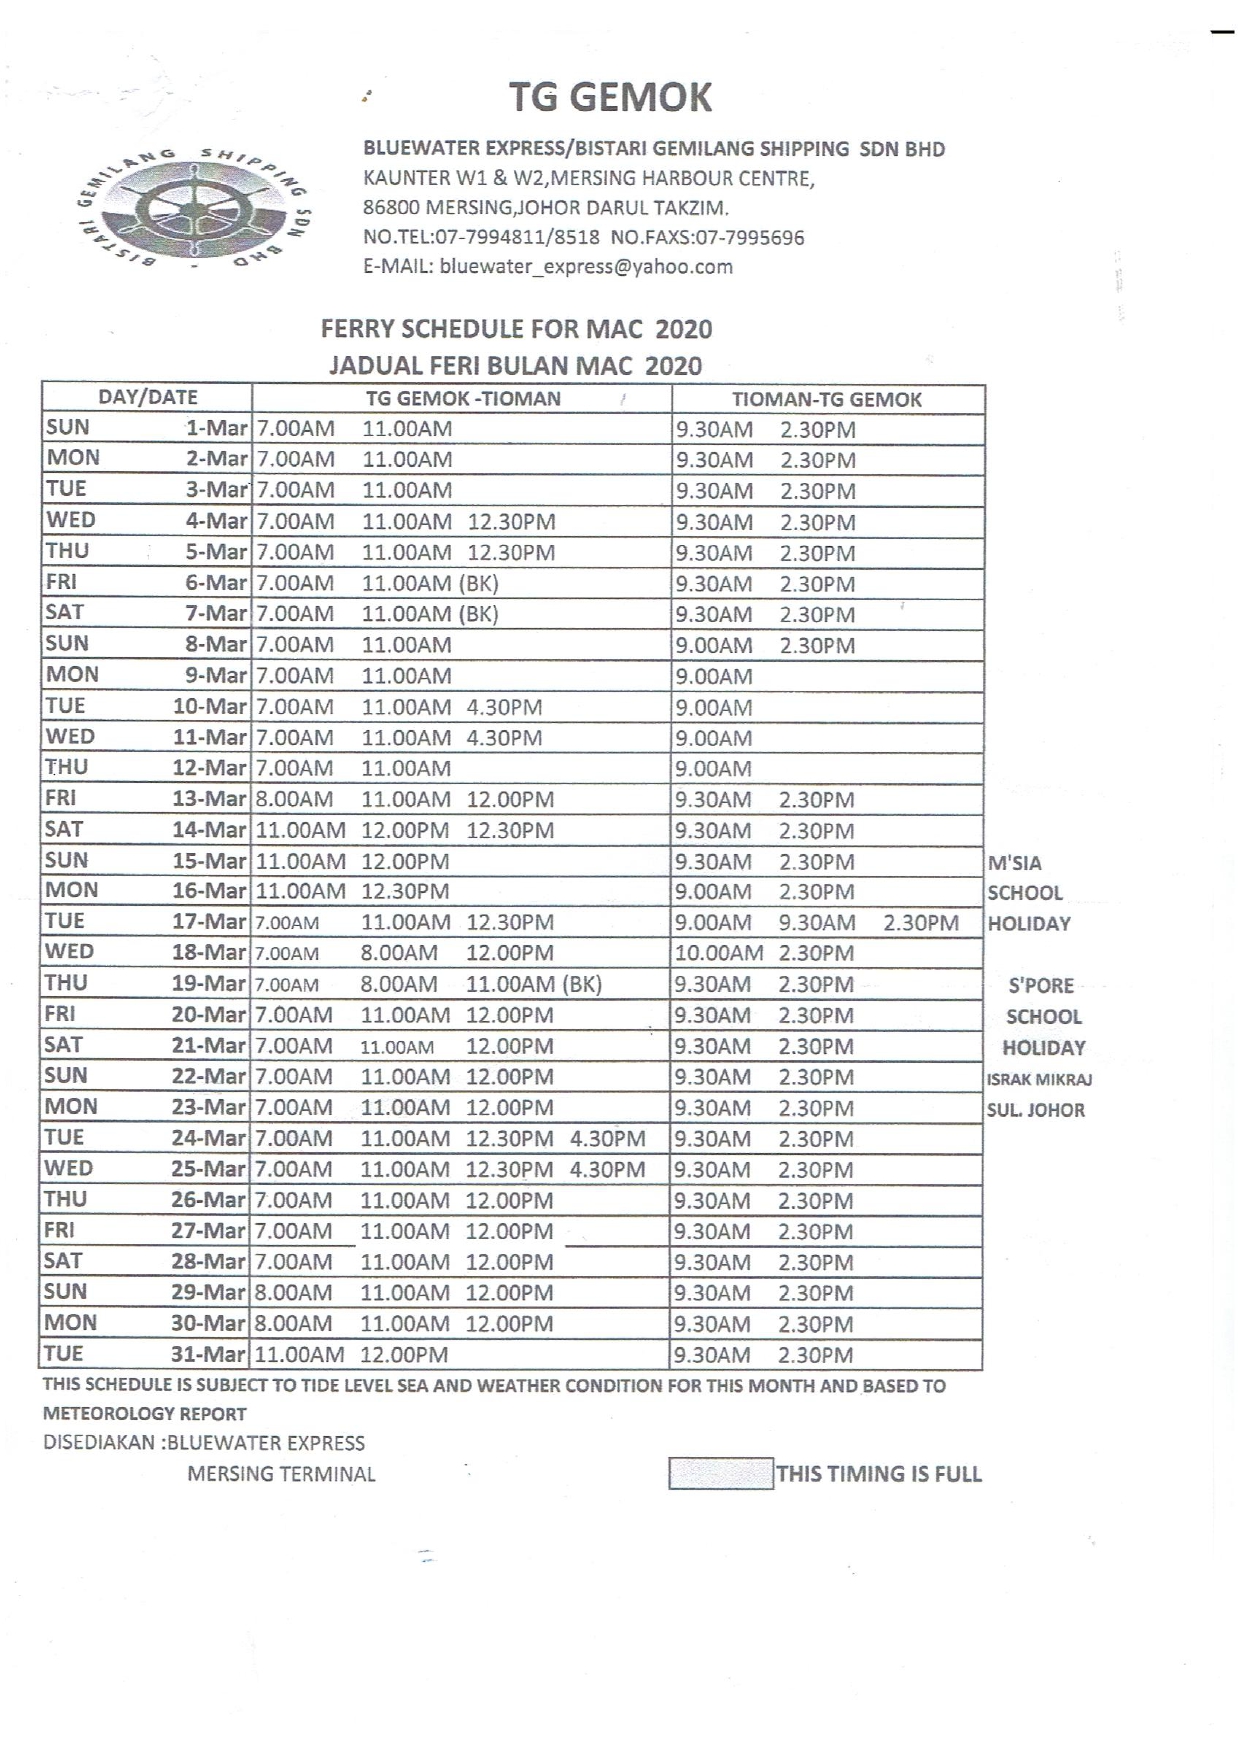 Tanjung Gemok-Tioman Ferry Schedule August 2019